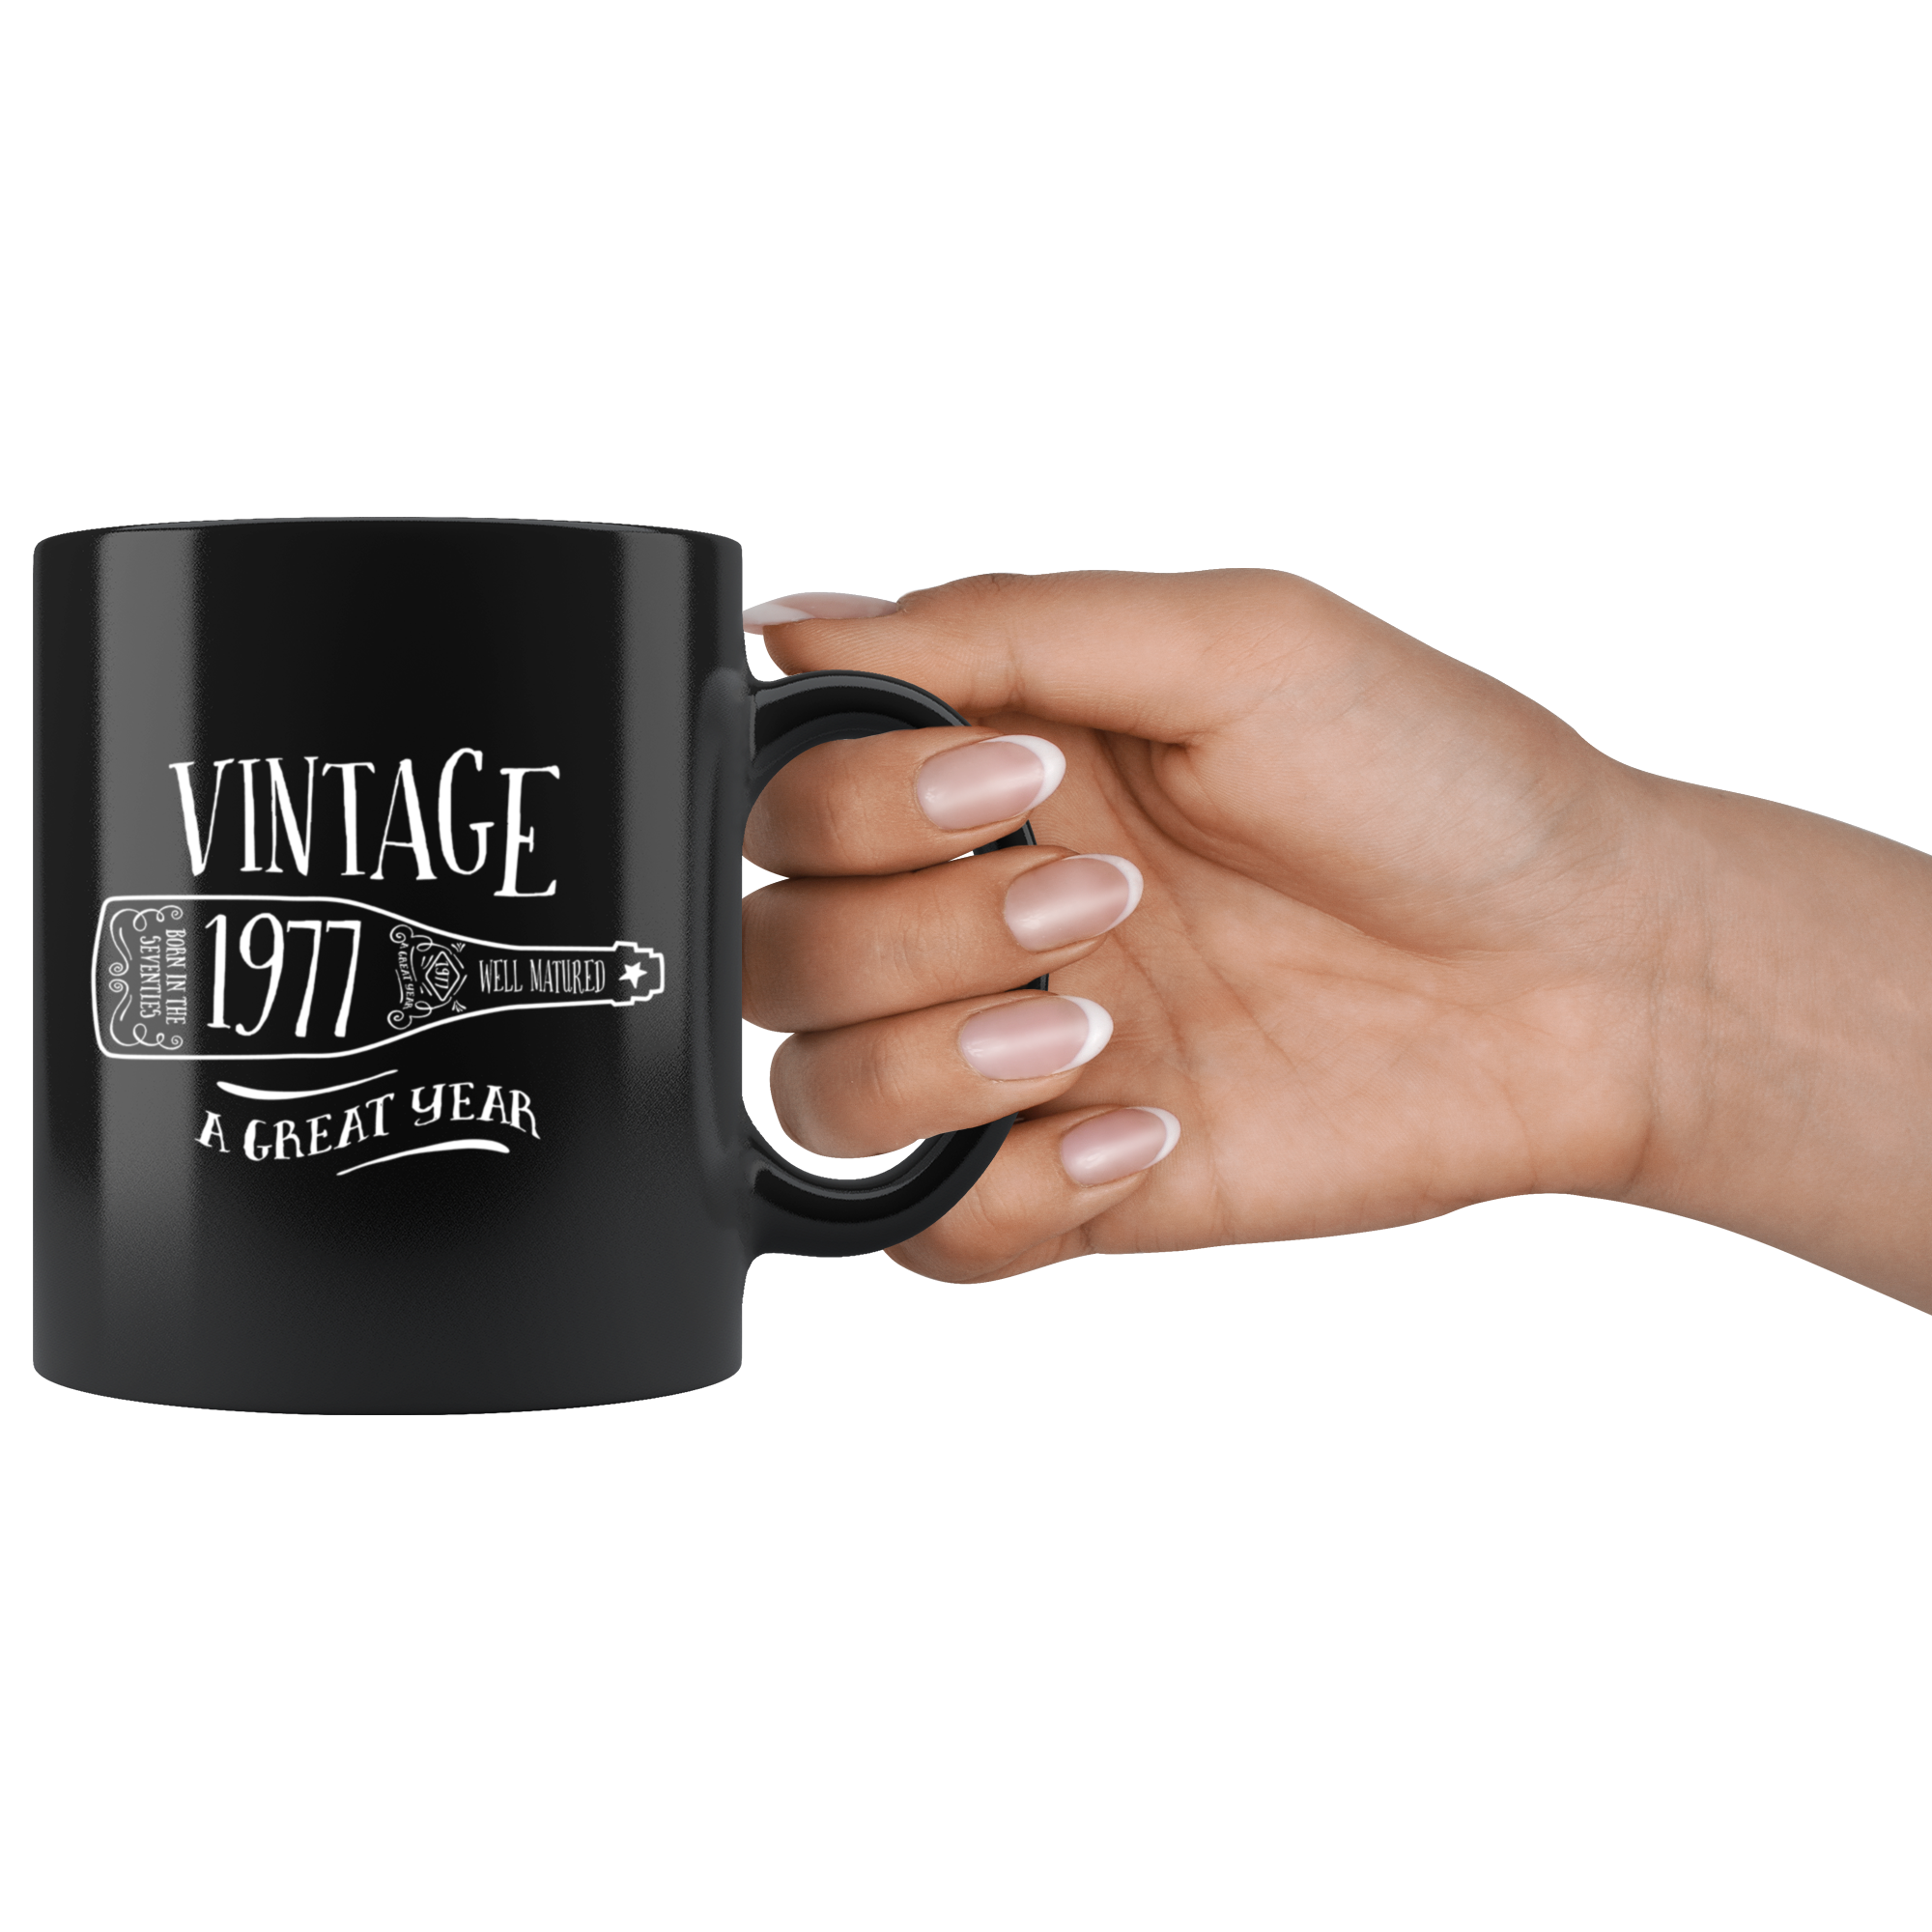 Vintage 1977 - Black Mug